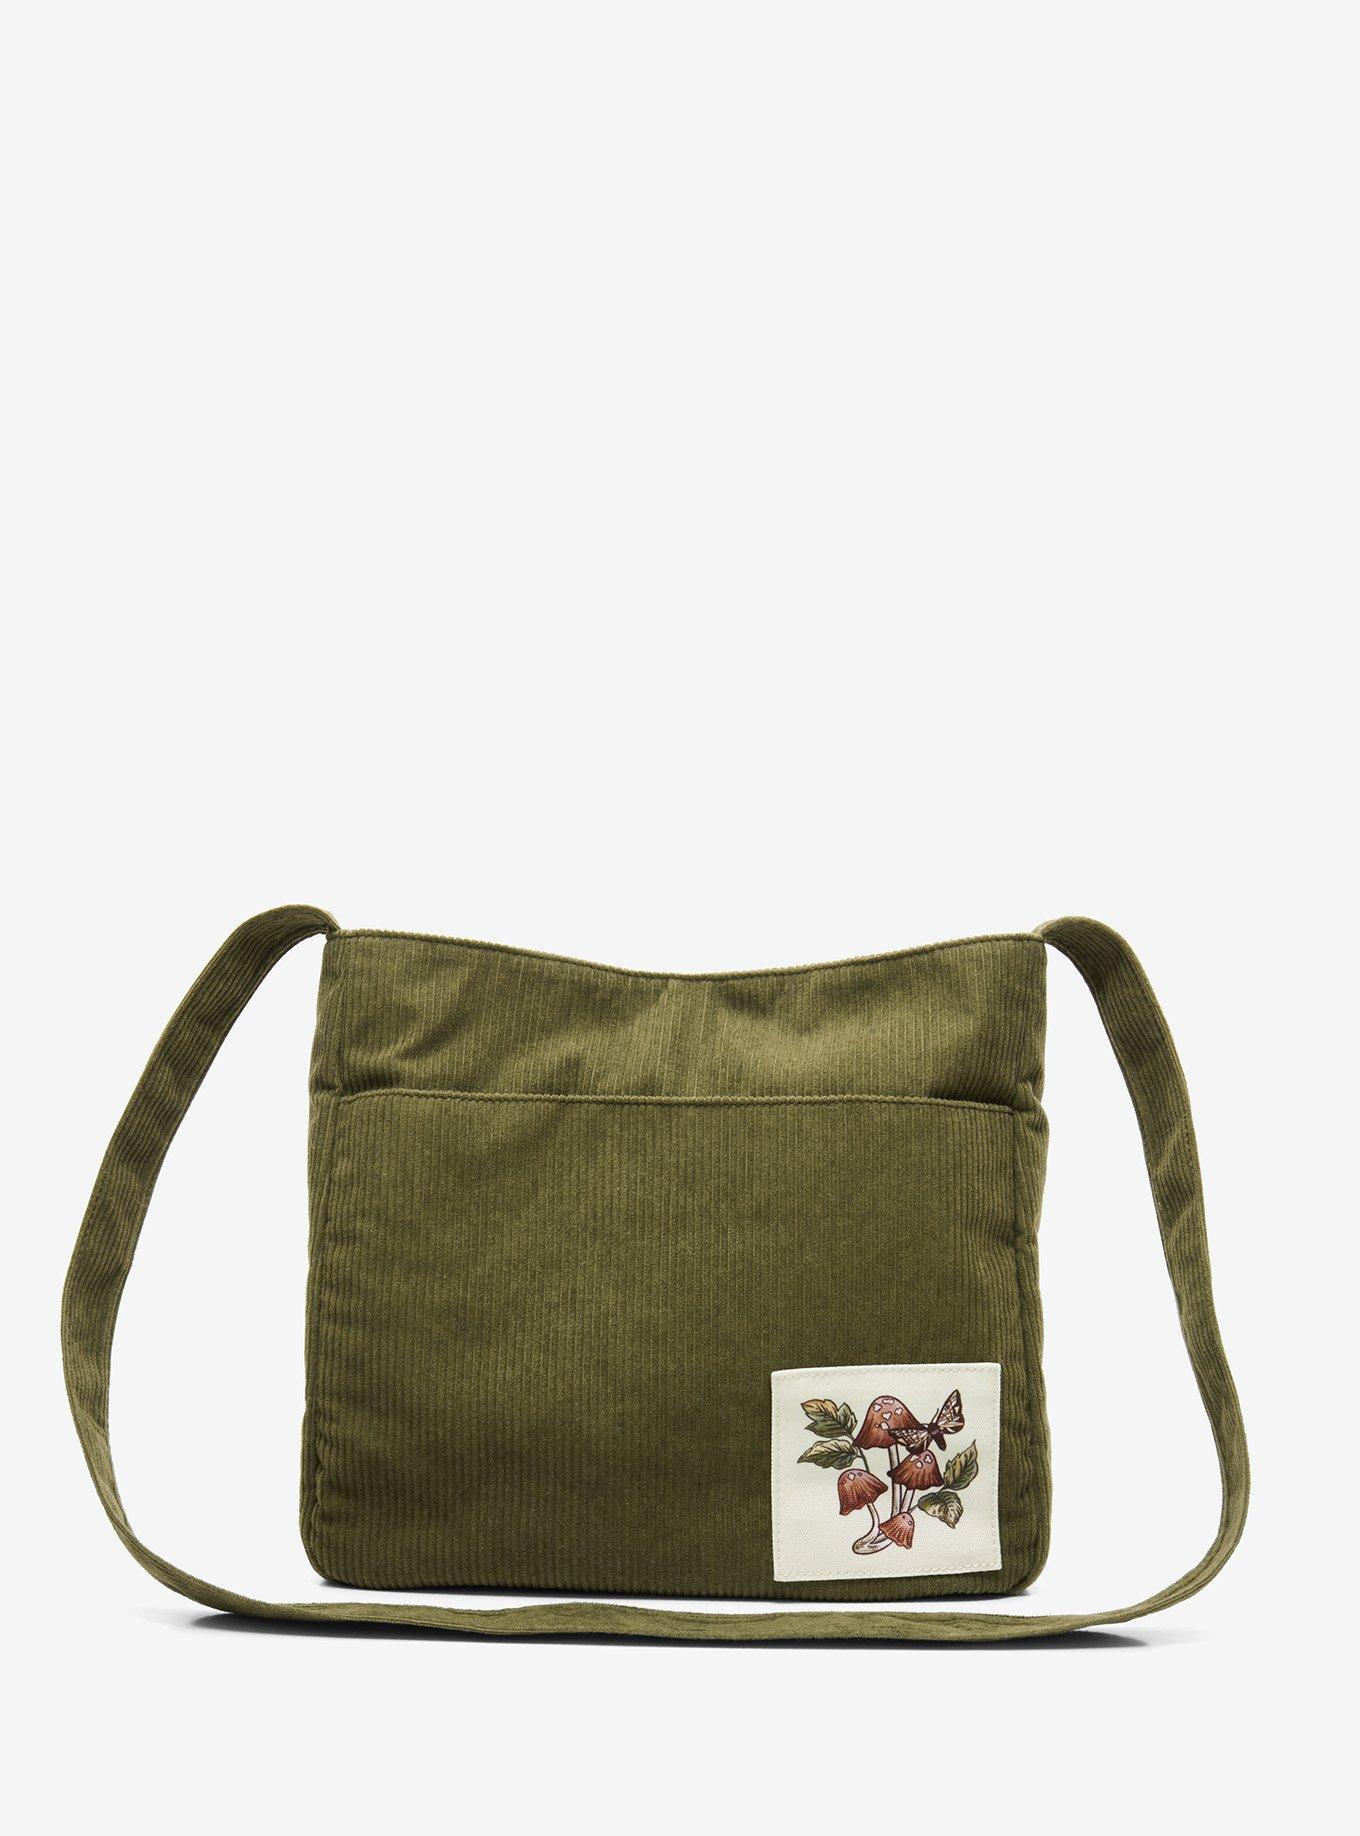 Jelly toy boy bag messenger bag/shoulder bag 